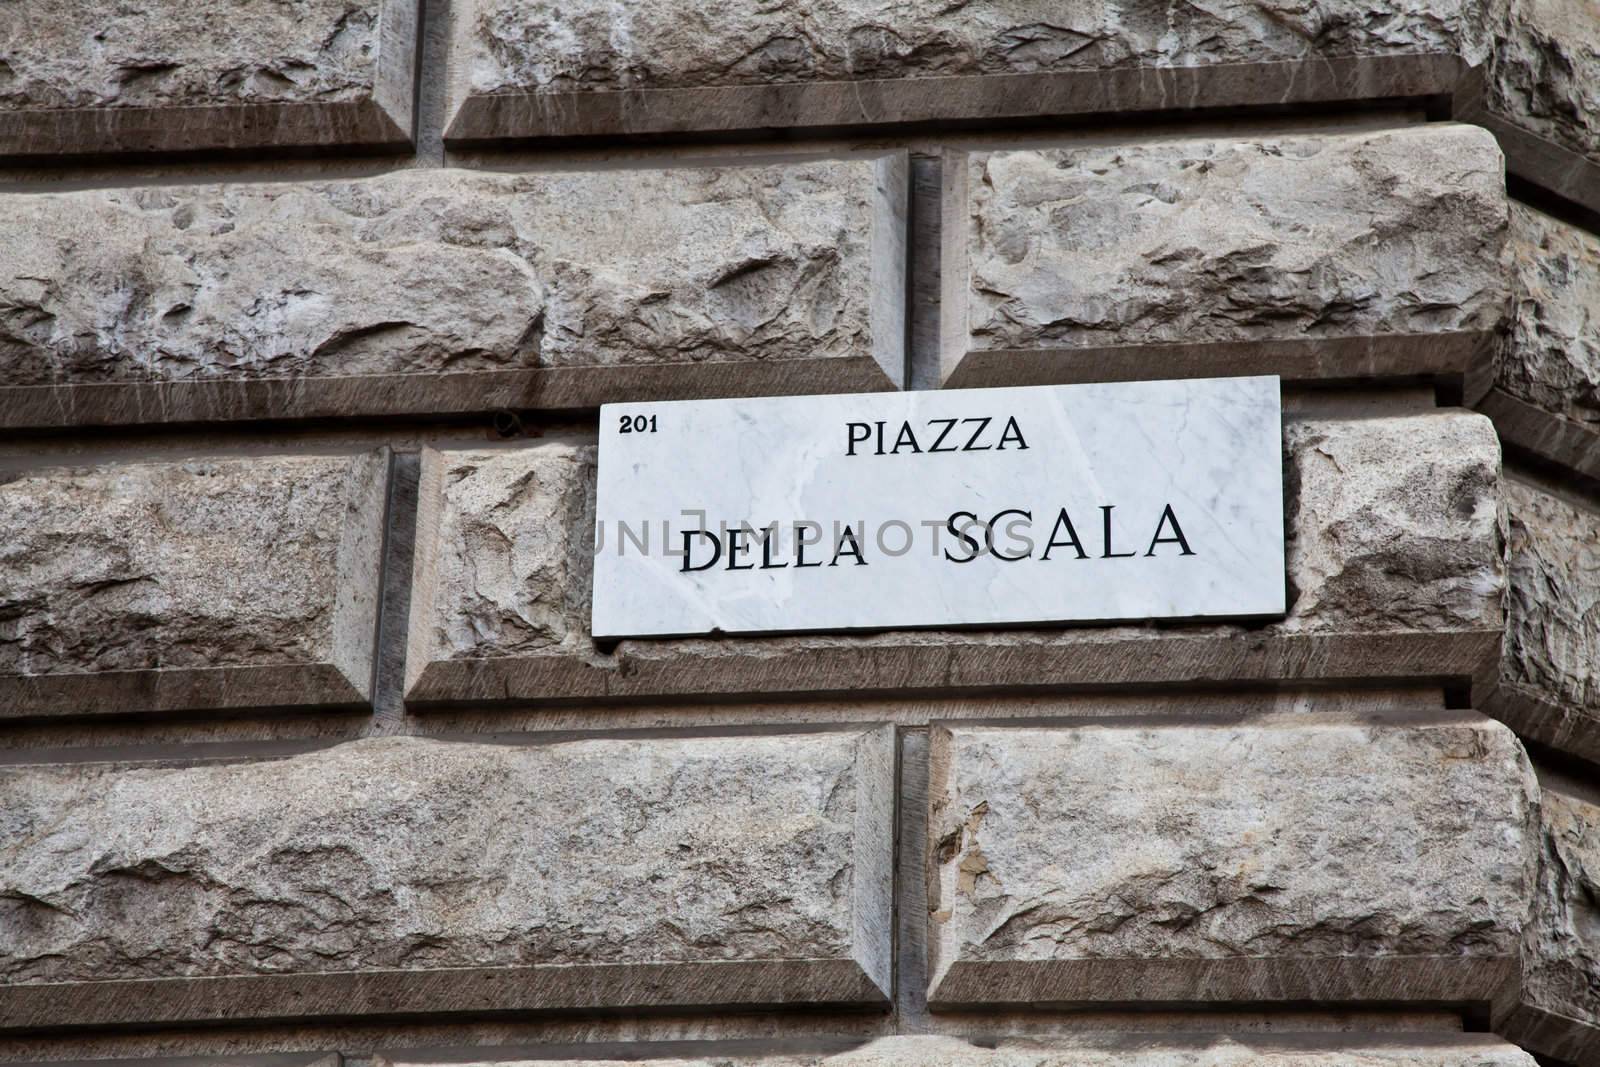 Piazza della Scala by Perseomedusa